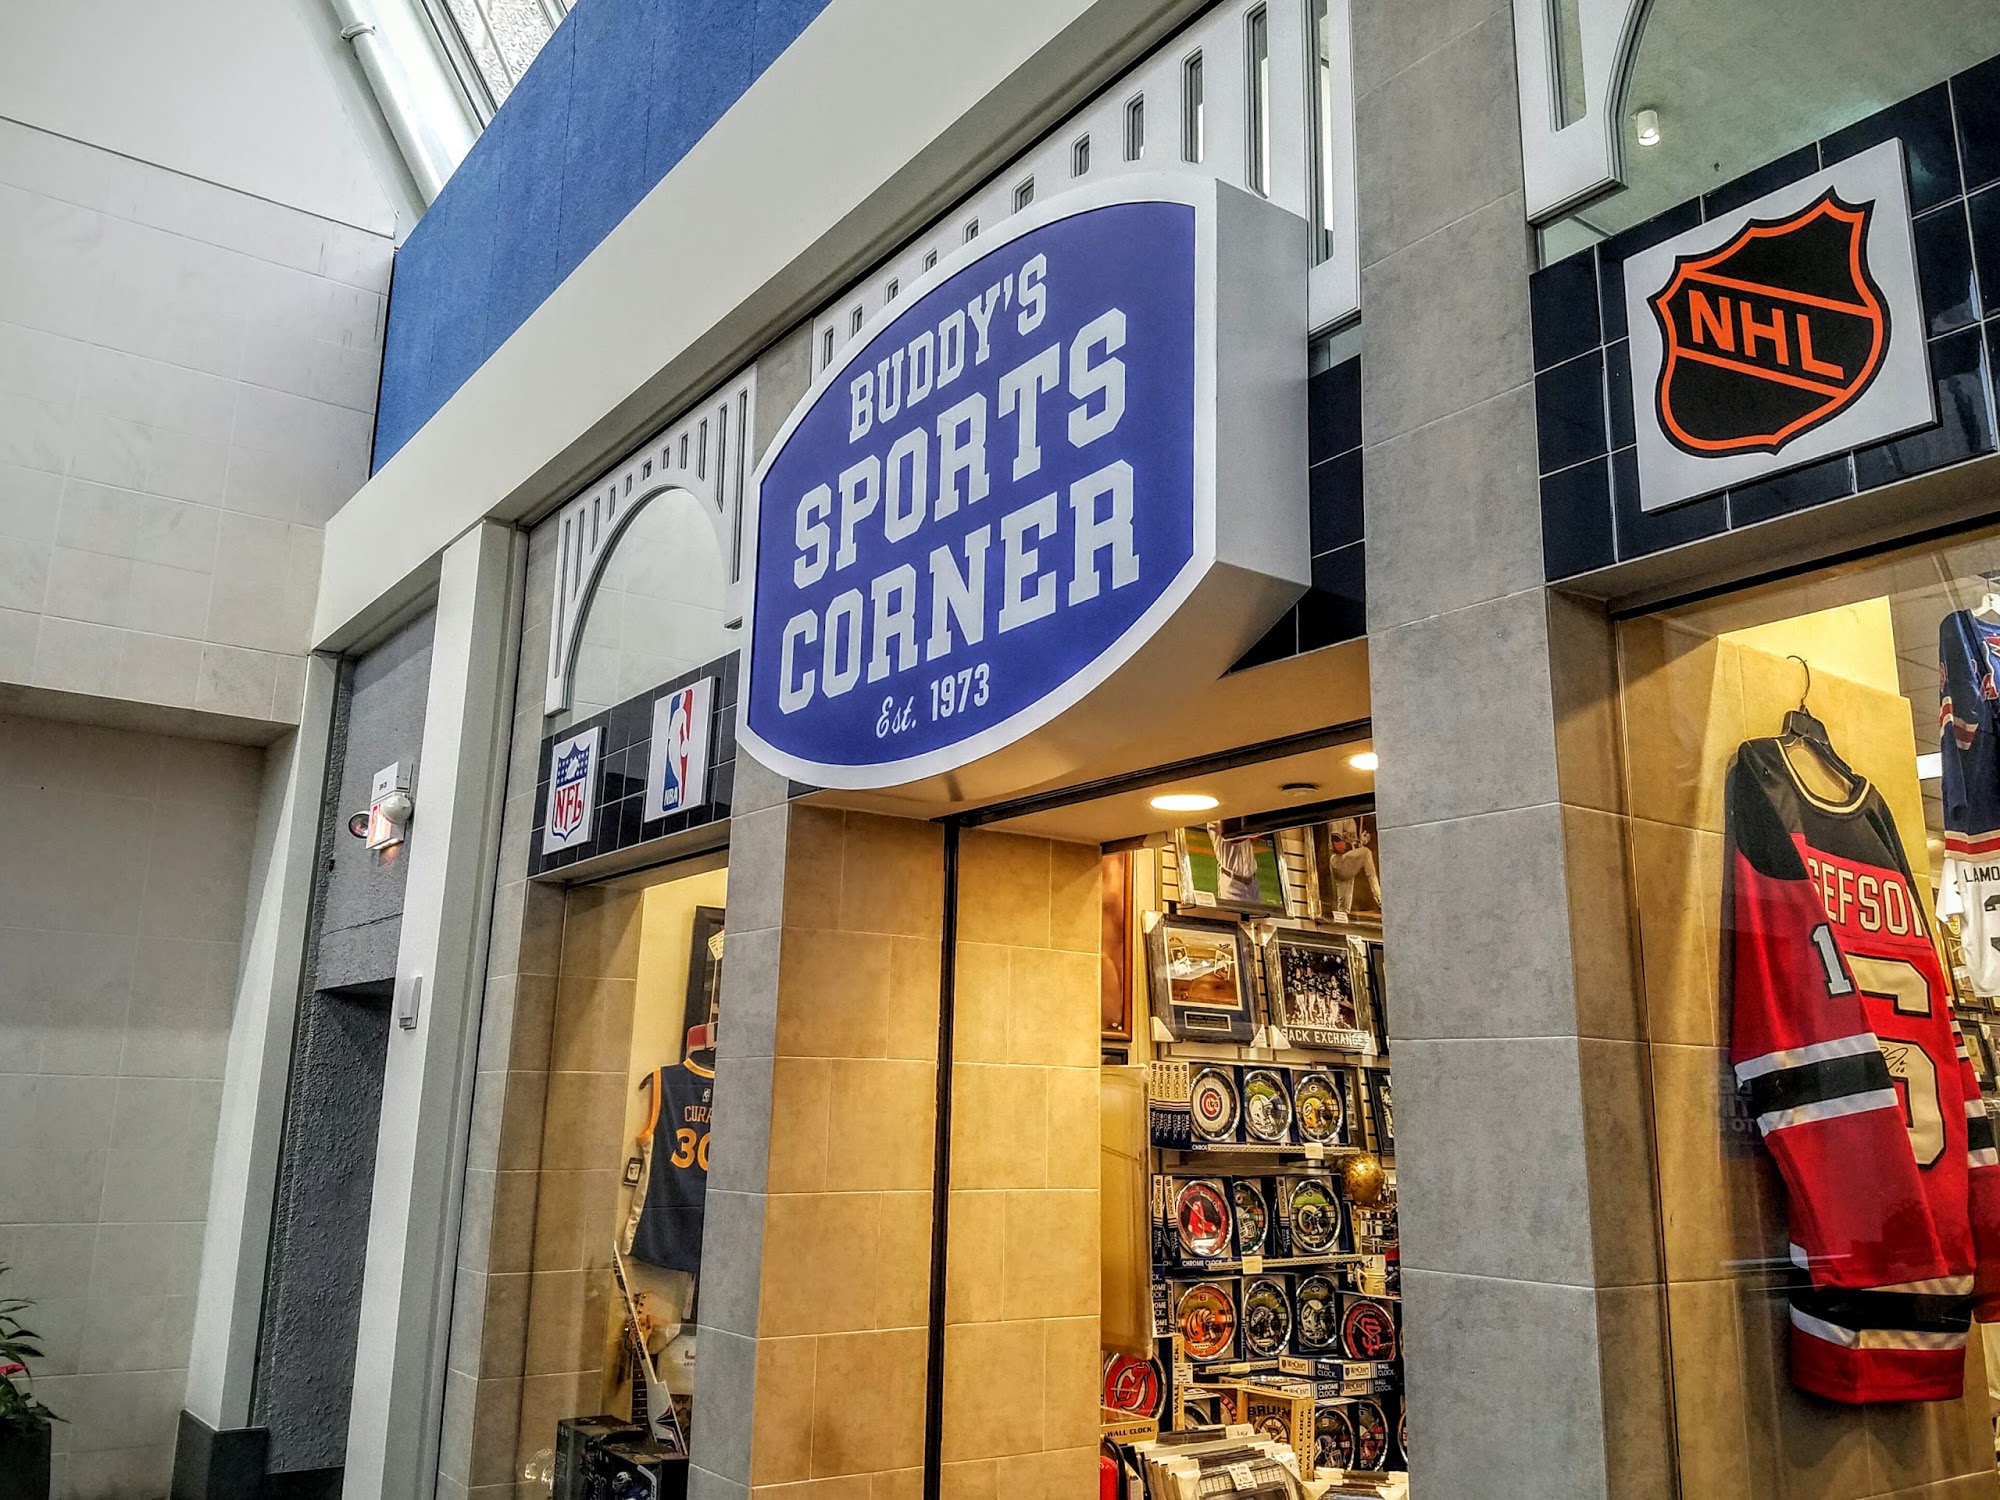 Buddy's Sports Corner